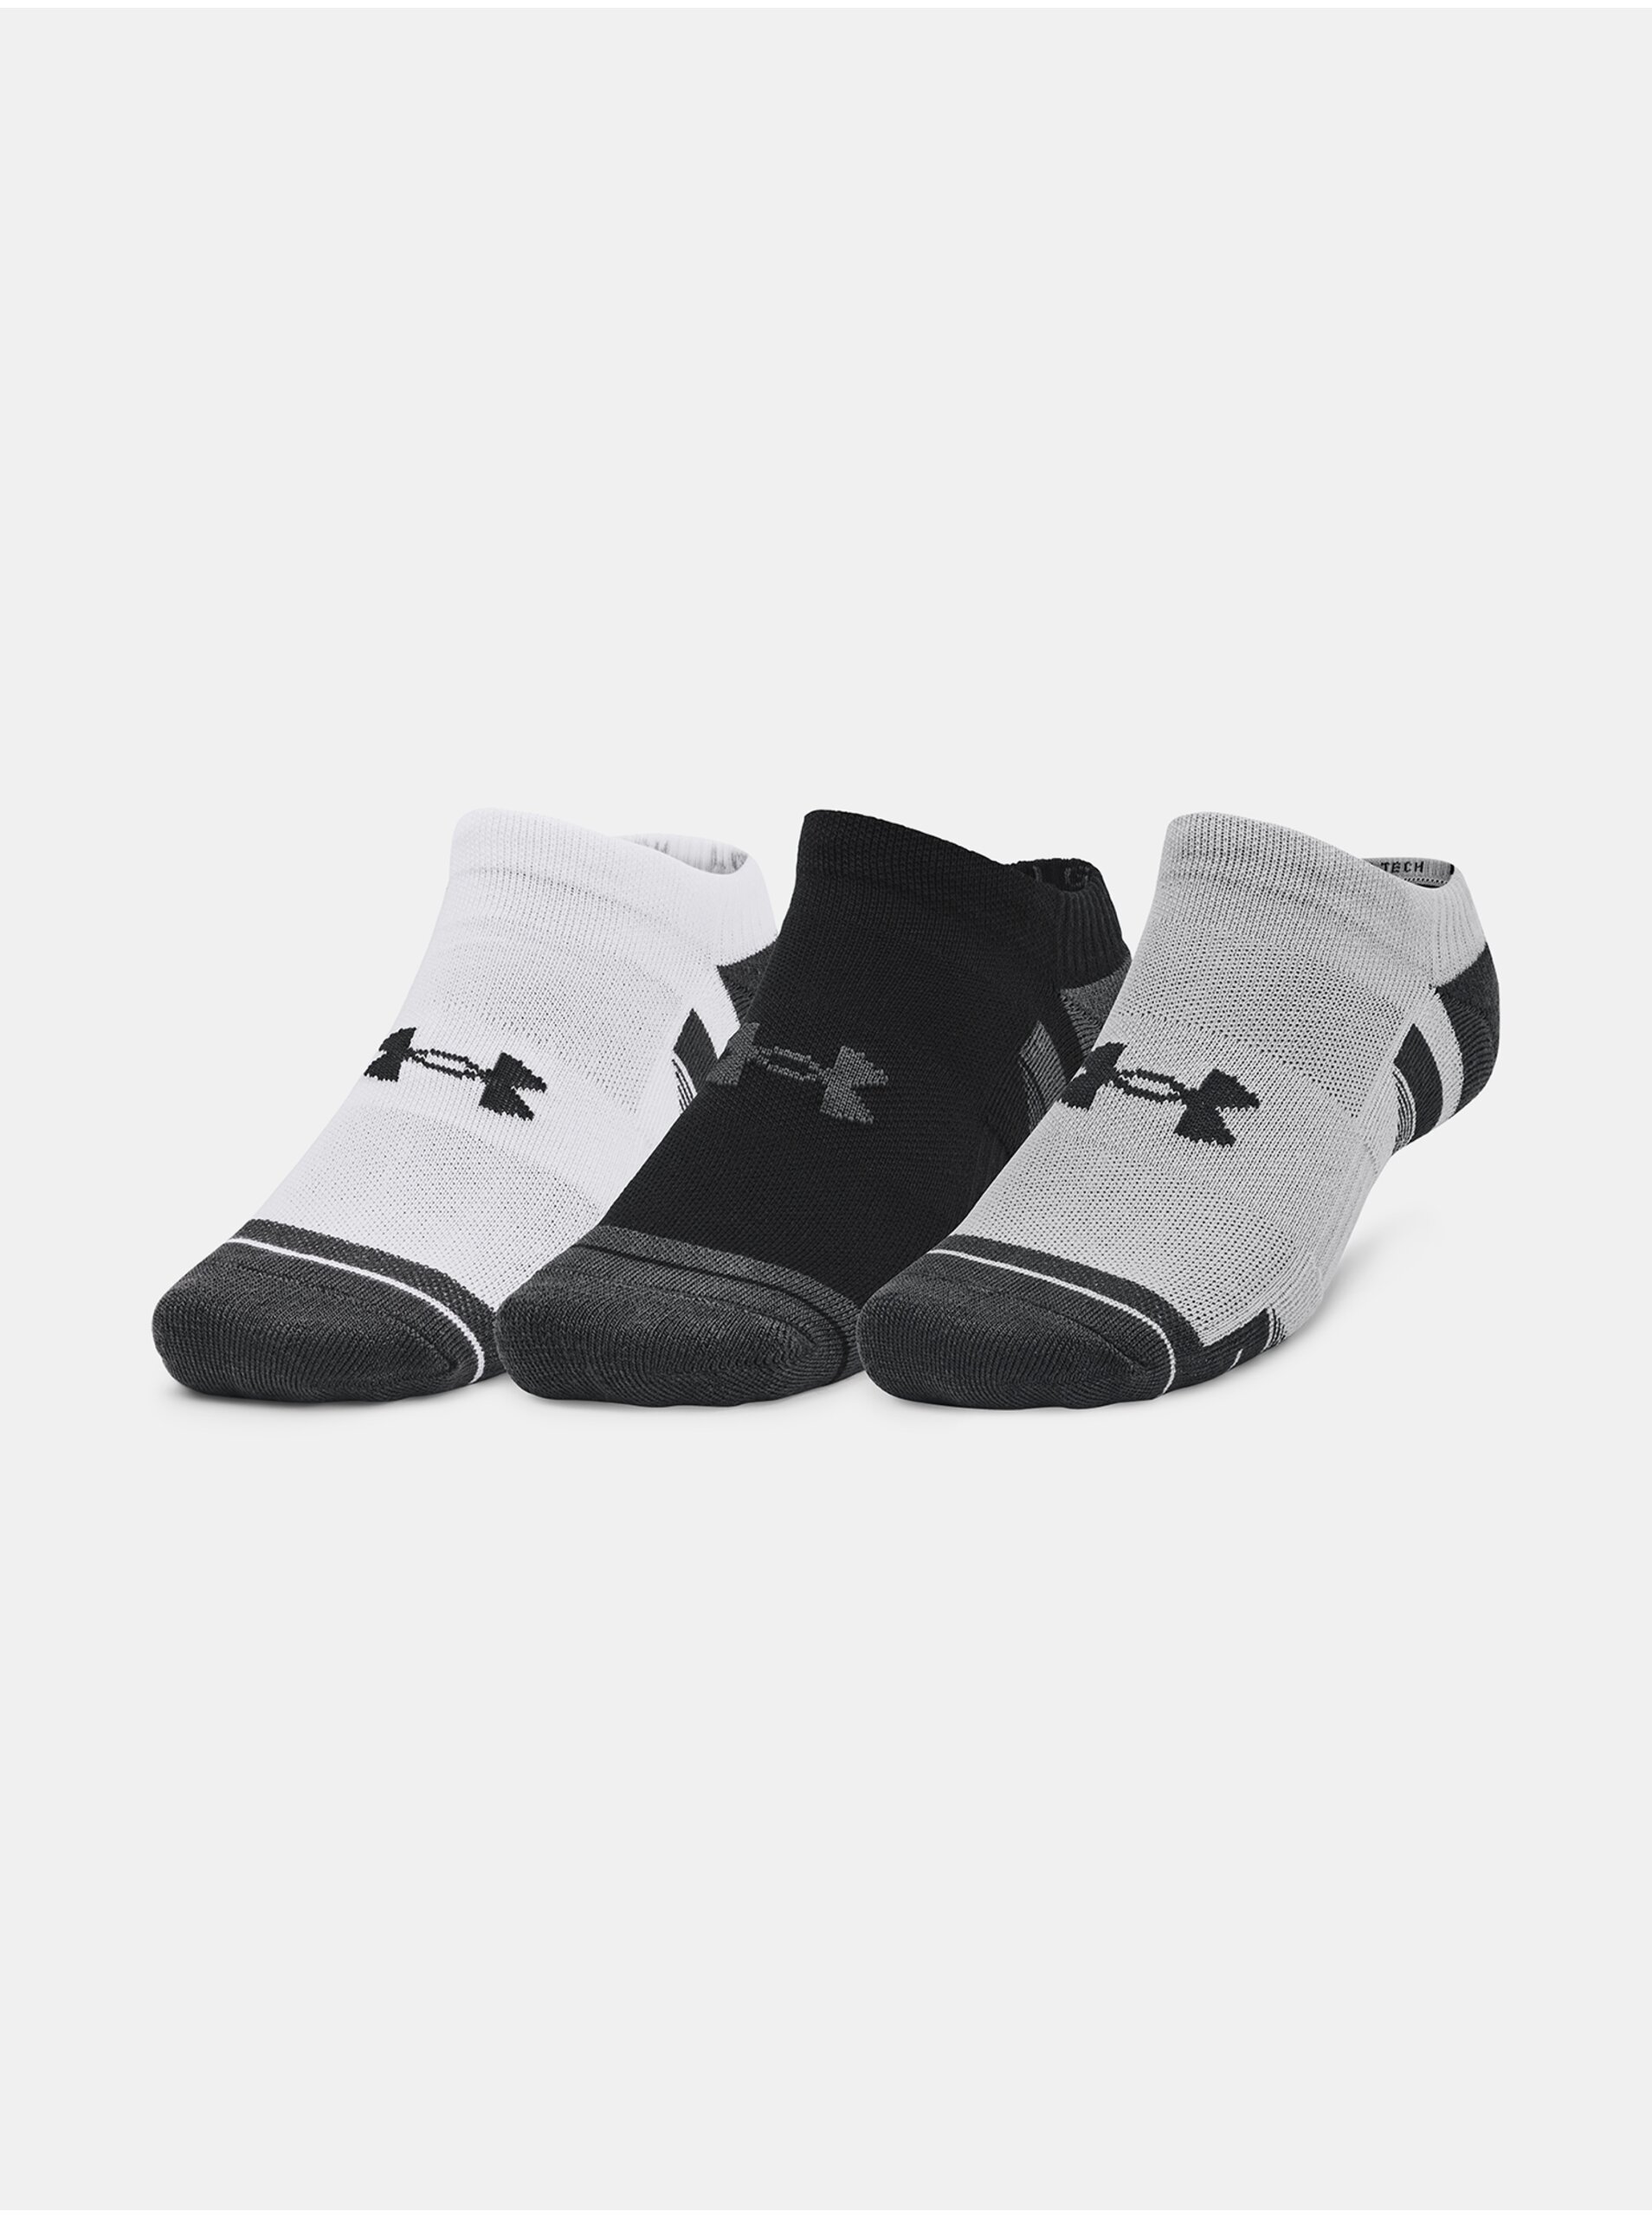 Lacno Súprava troch párov unisex ponožiek v bielej, čiernej a šedej farbe Under Armour UA Performance Tech 3pk NS